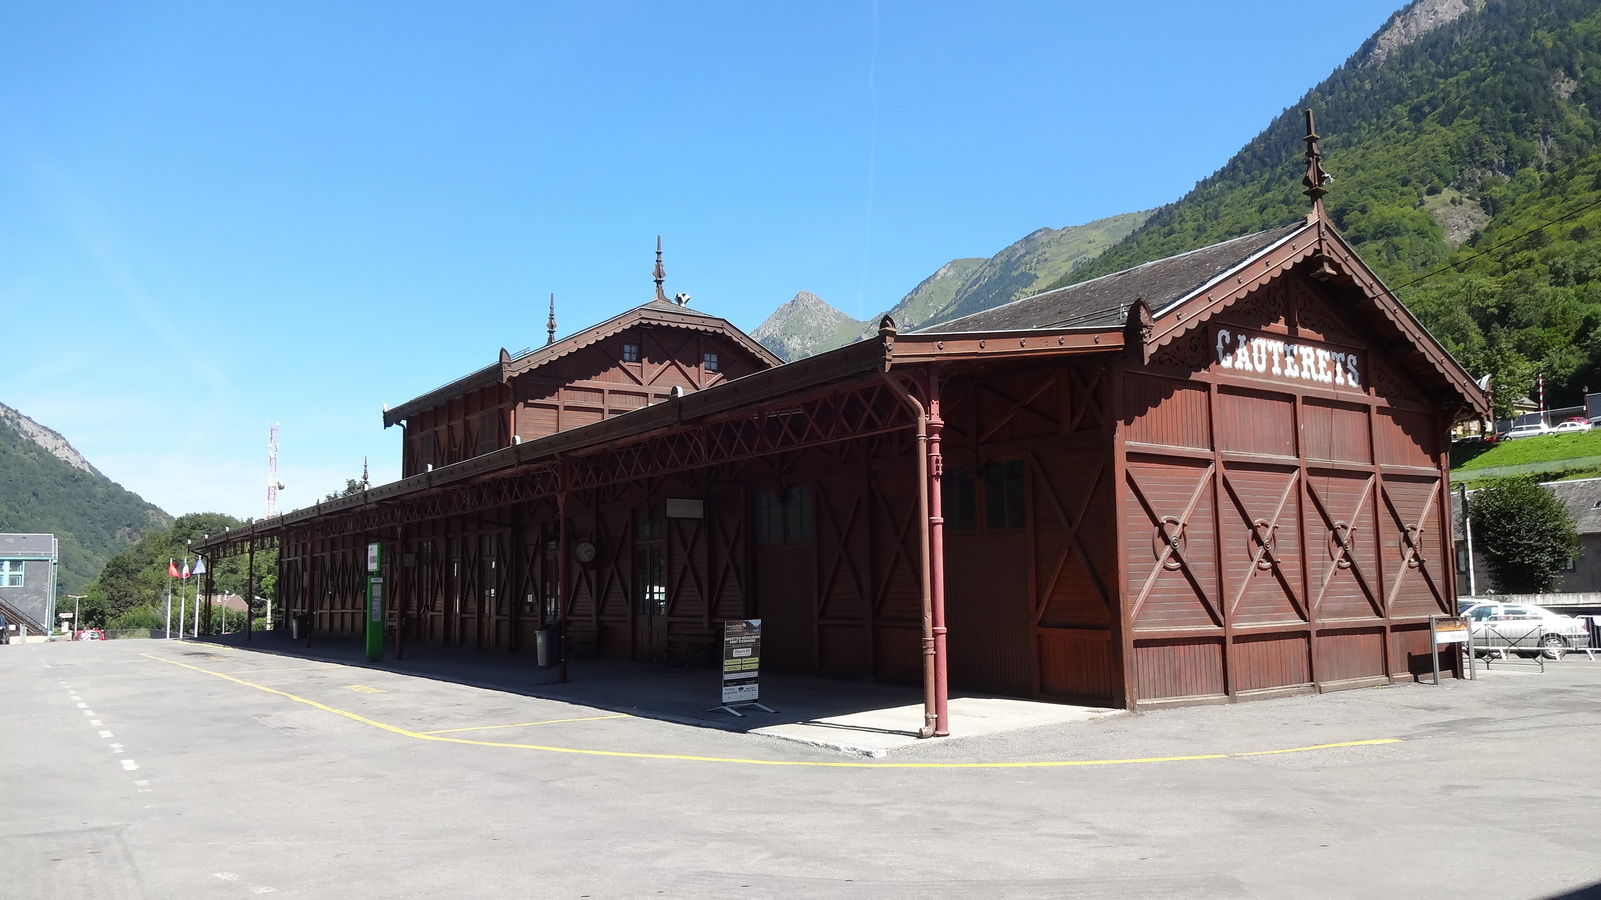 Gare de Cauterets